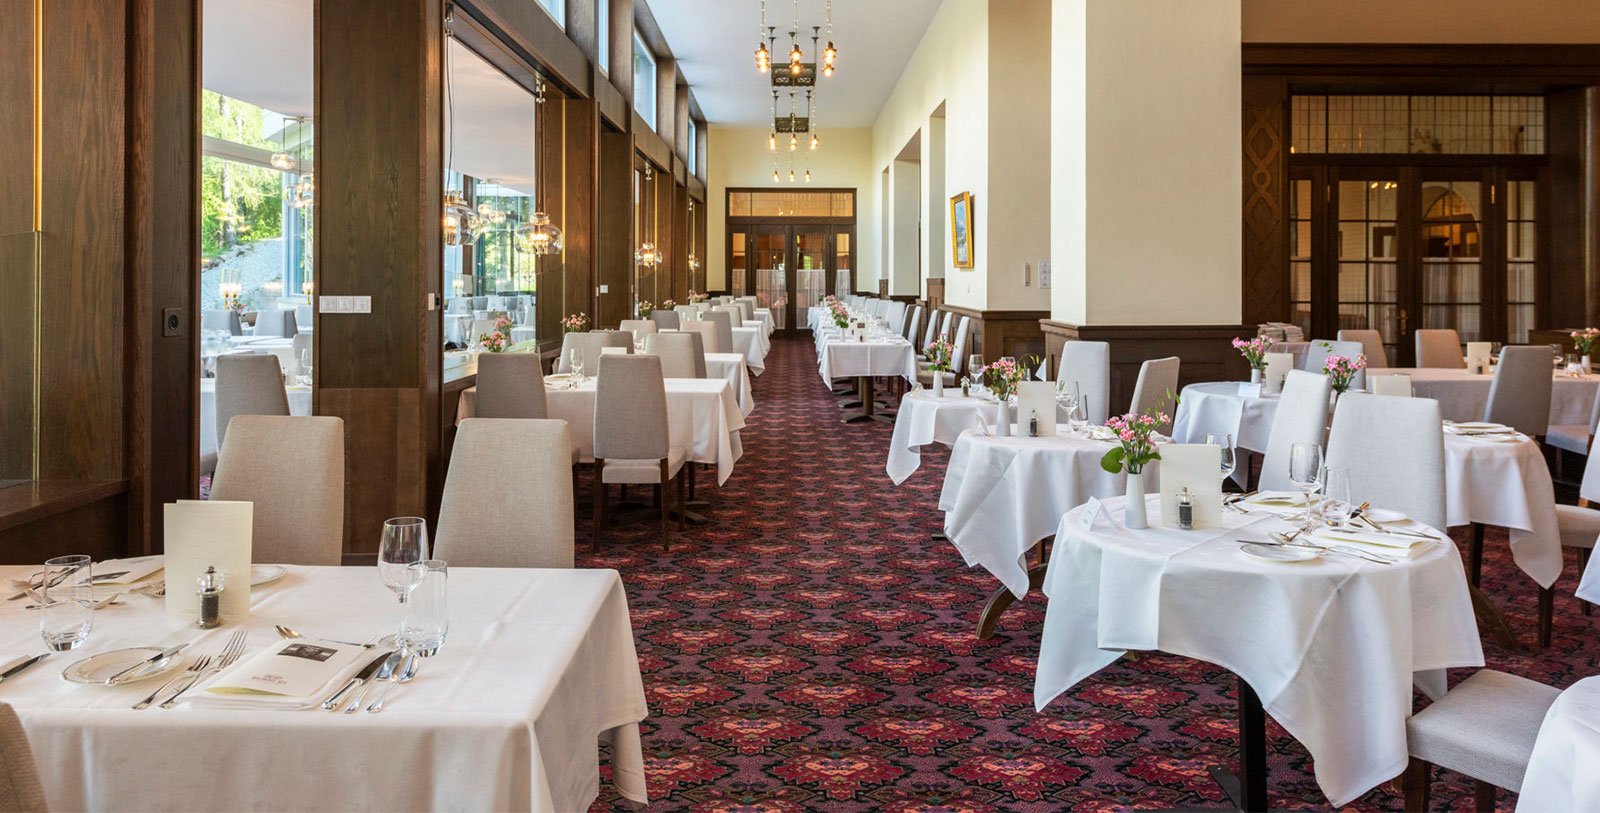 Image of Arvenstube Restaurant of the Hotel Waldhaus Sils in Sils Maria, Switzerland